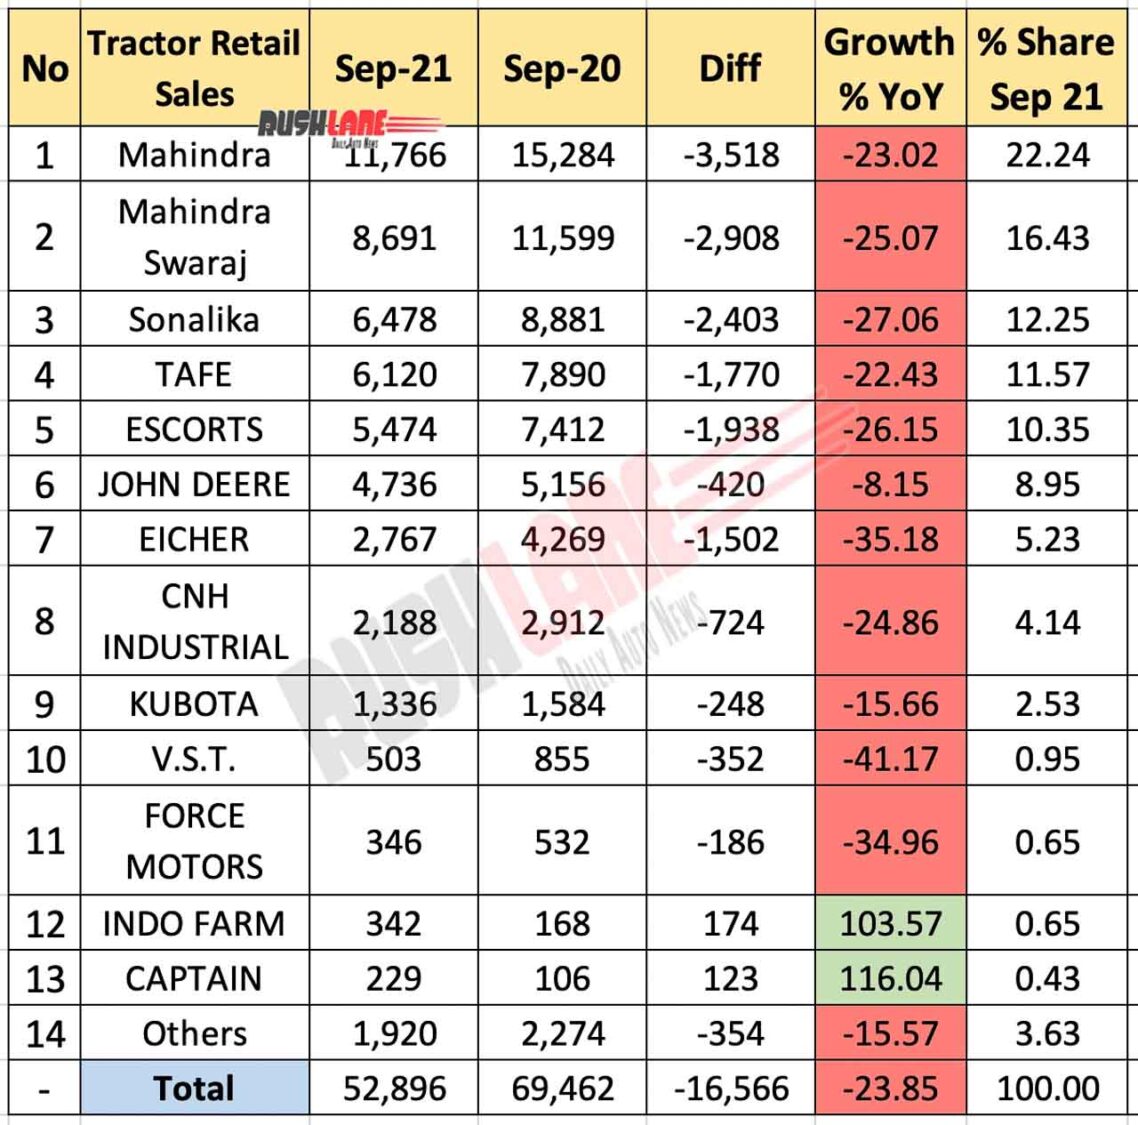 Tractor Sales Sep 2021 vs Sep 2020 (YoY)